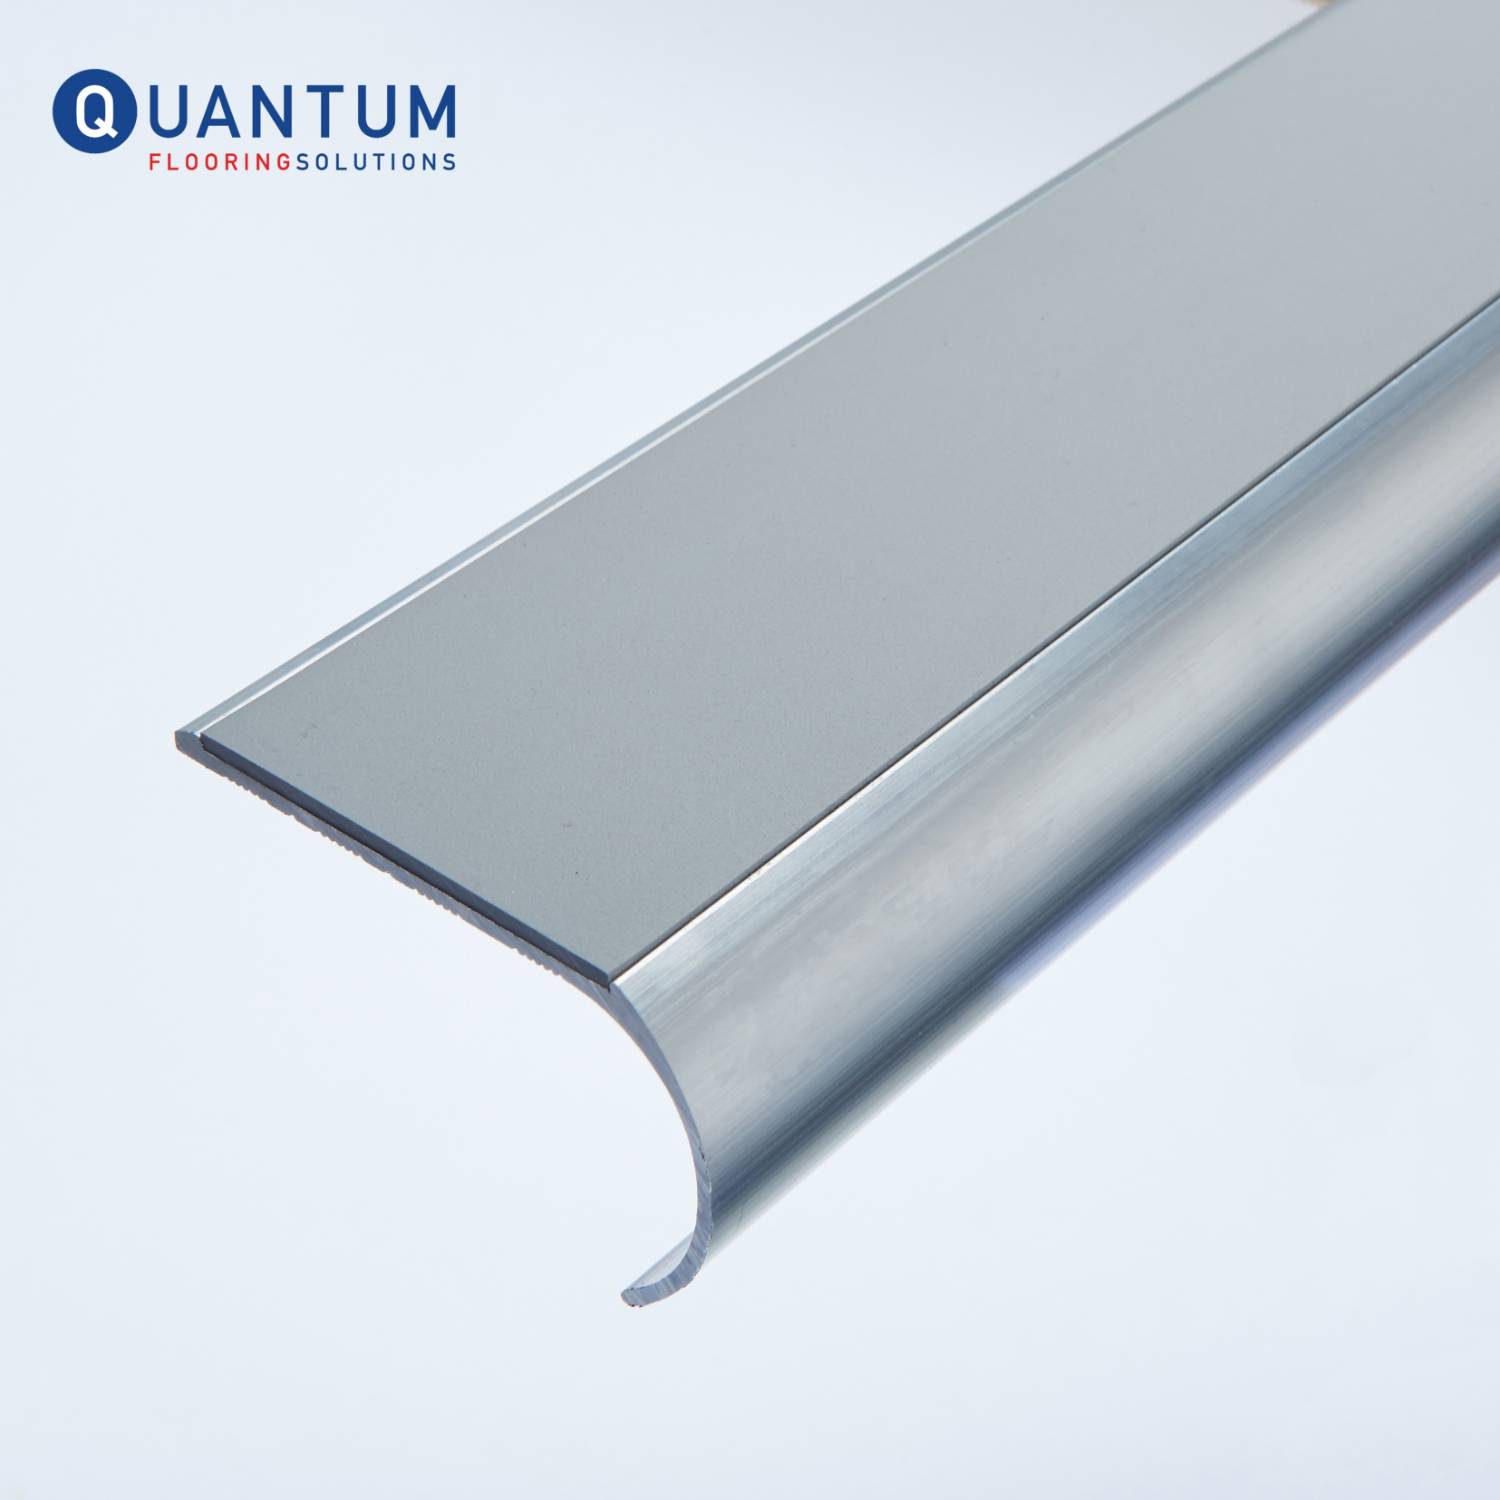 S Range - Traditional Aluminium Slenderline Stair Nosing/Stair Edging For Vinyl Floorcoverings